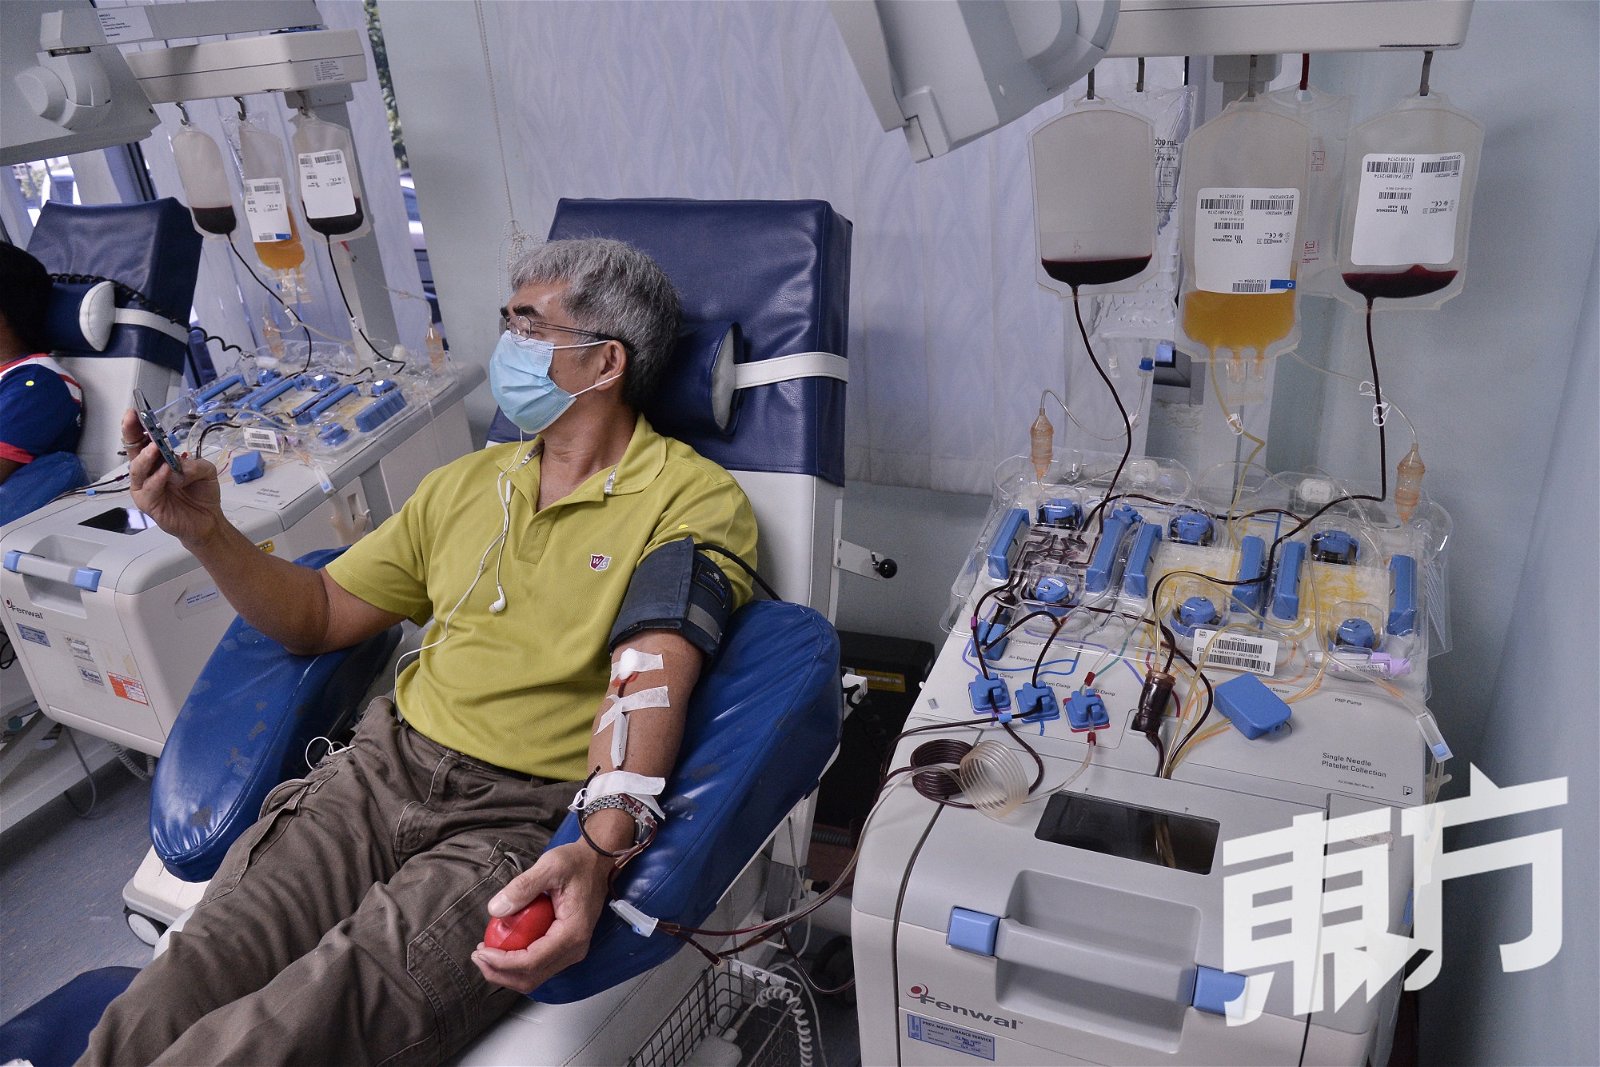 国家血库中心拥有血液分离仪器，供民众捐献成分血。该仪器只会抽取所需的血浆及血小板，其他血液成份如红血球则会输回给捐赠者。民众只有在捐献全血数次后，没有出现任何不适的情况，才符合条件捐献成分血。